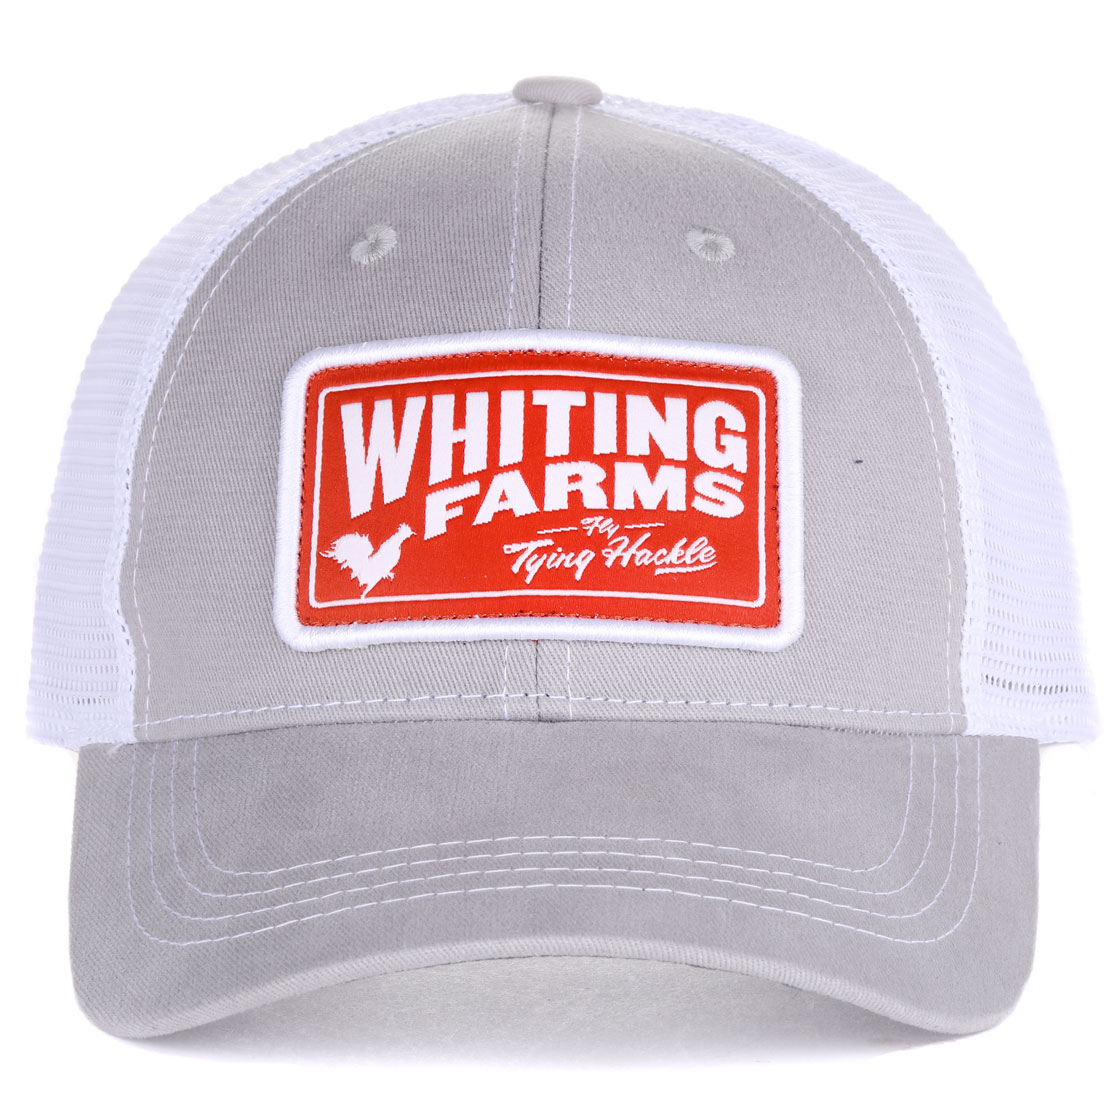 Whiting Farms Mesh Cap Schirmmütze nimbus cloud/white, Kappen und Hüte, Kopfbedeckungen, Bekleidung